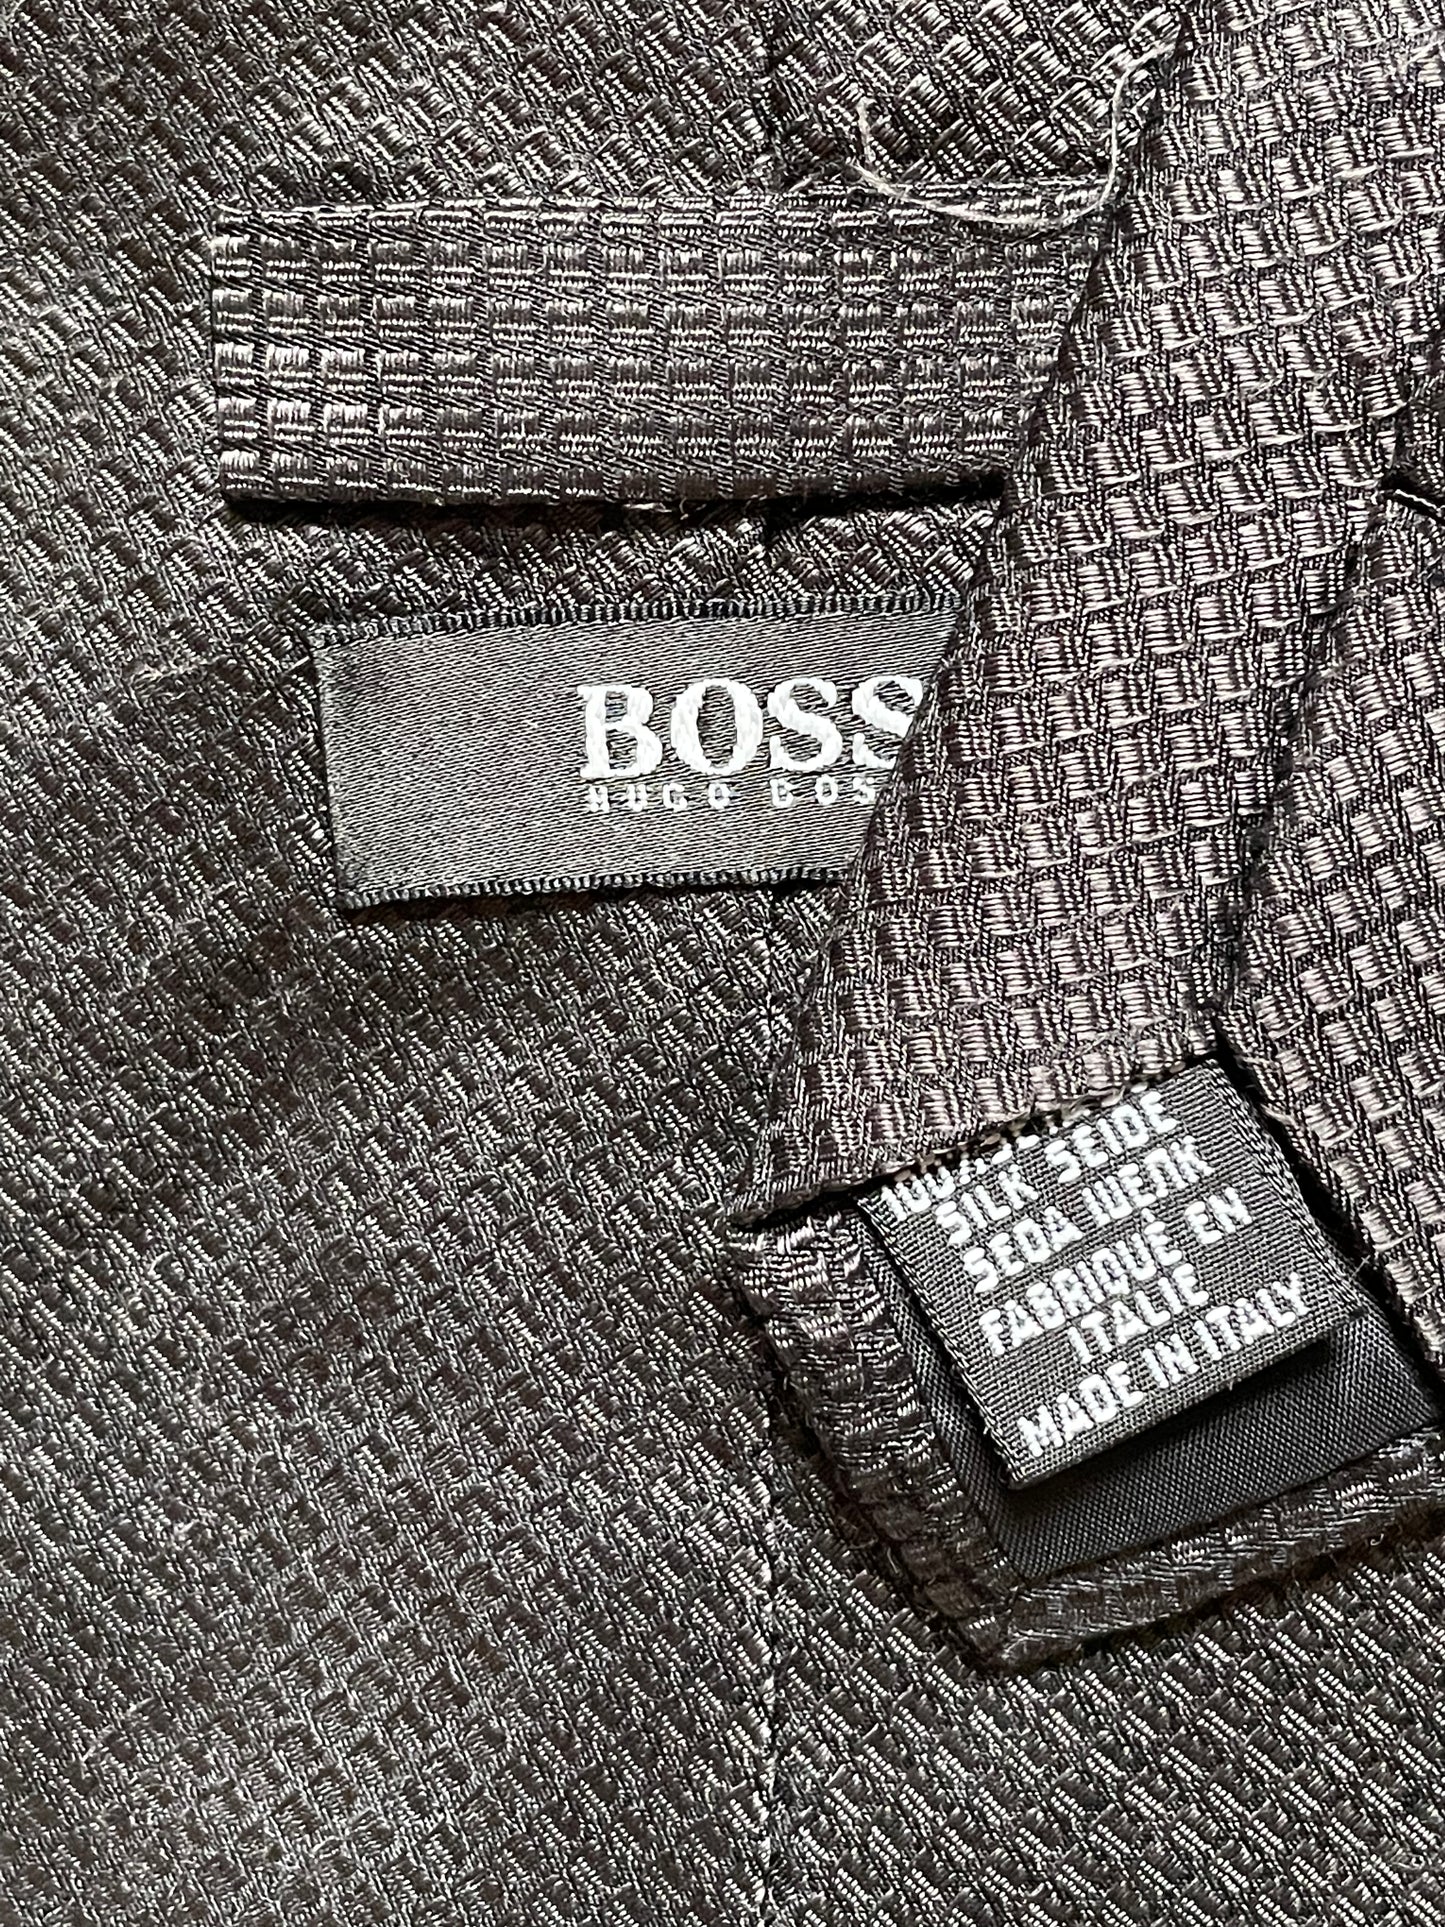 Cravate Boss noir